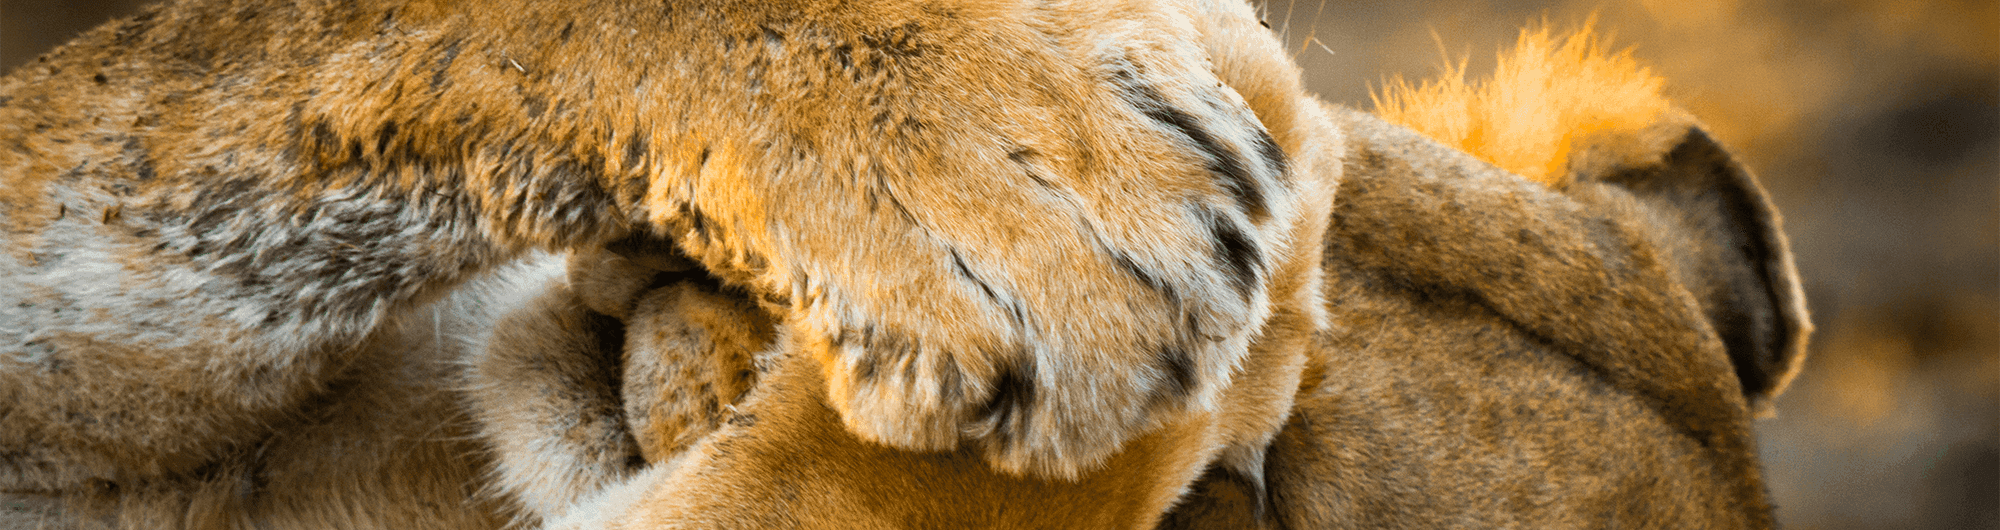 animal leão protegendo os olhos com as patas 